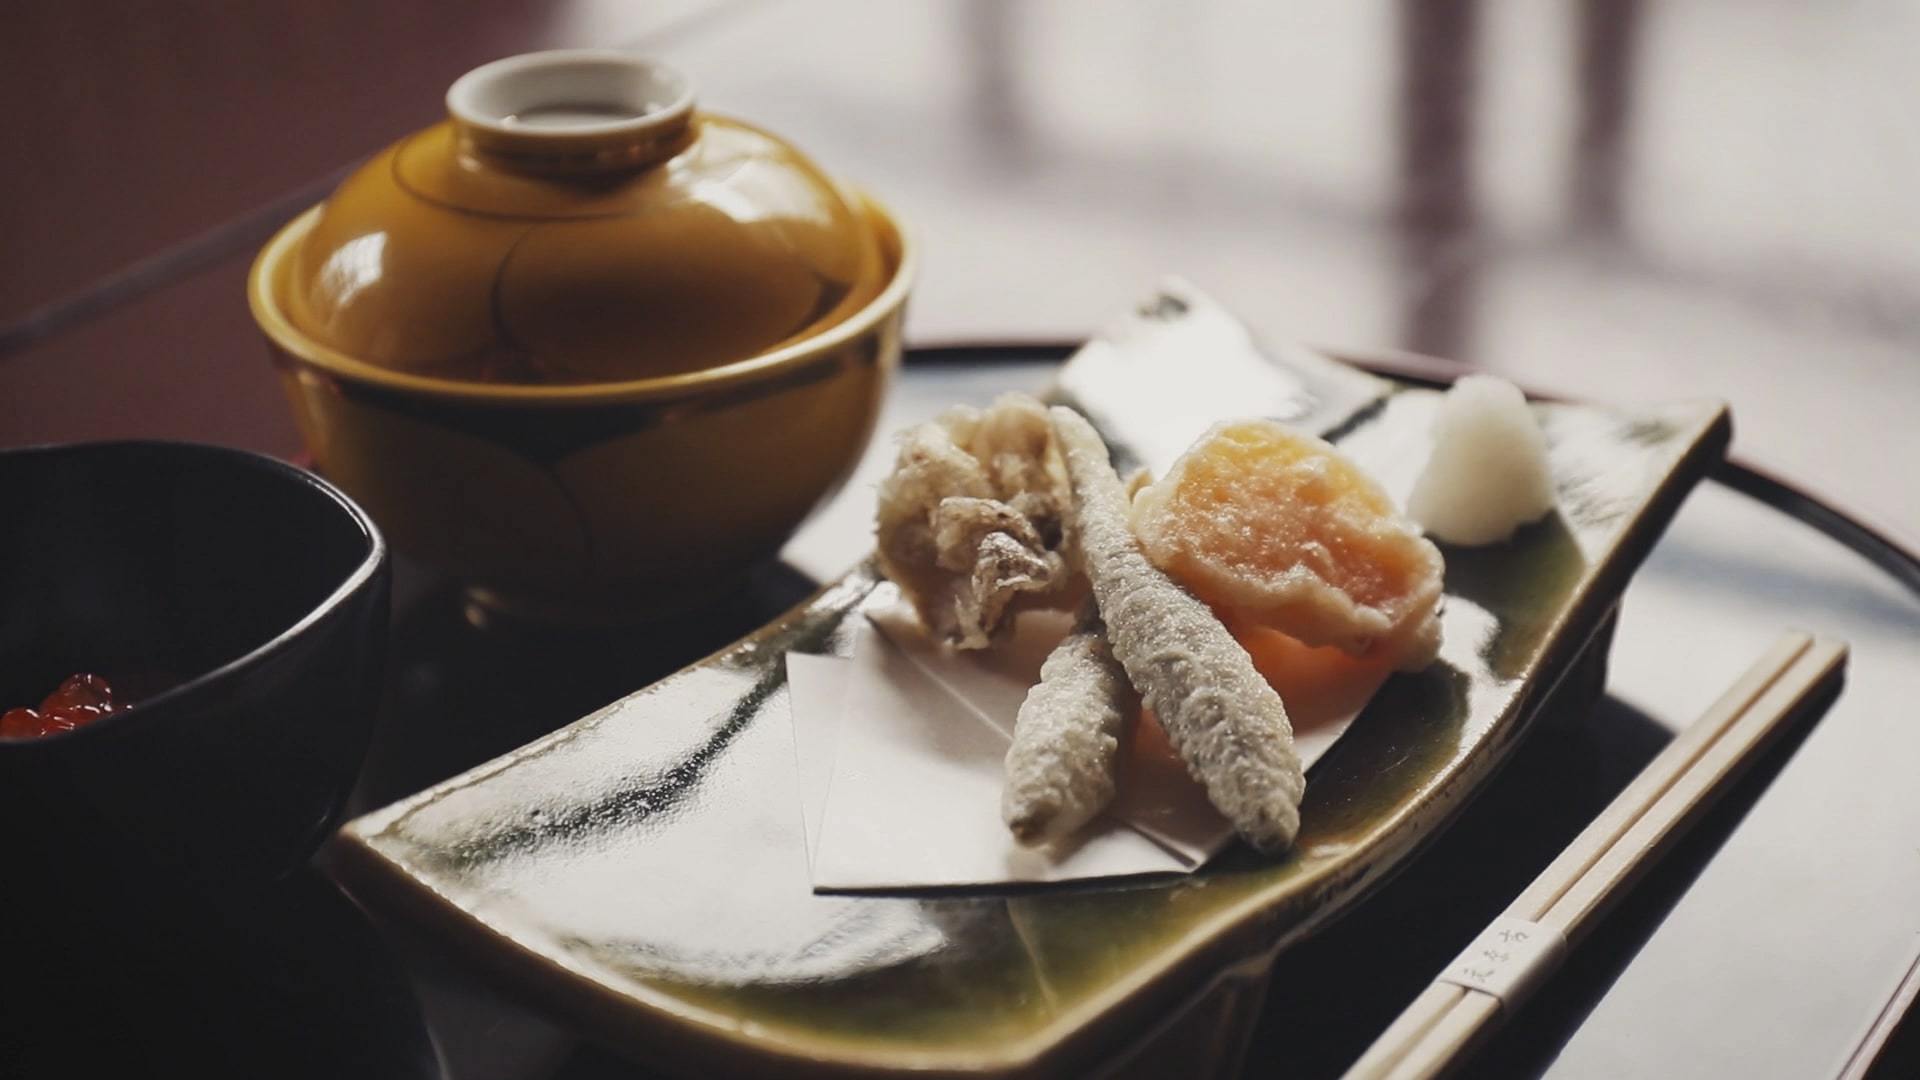 会席をお手頃に【京都の旅館で会席料理と朝食をごゆっくりと】